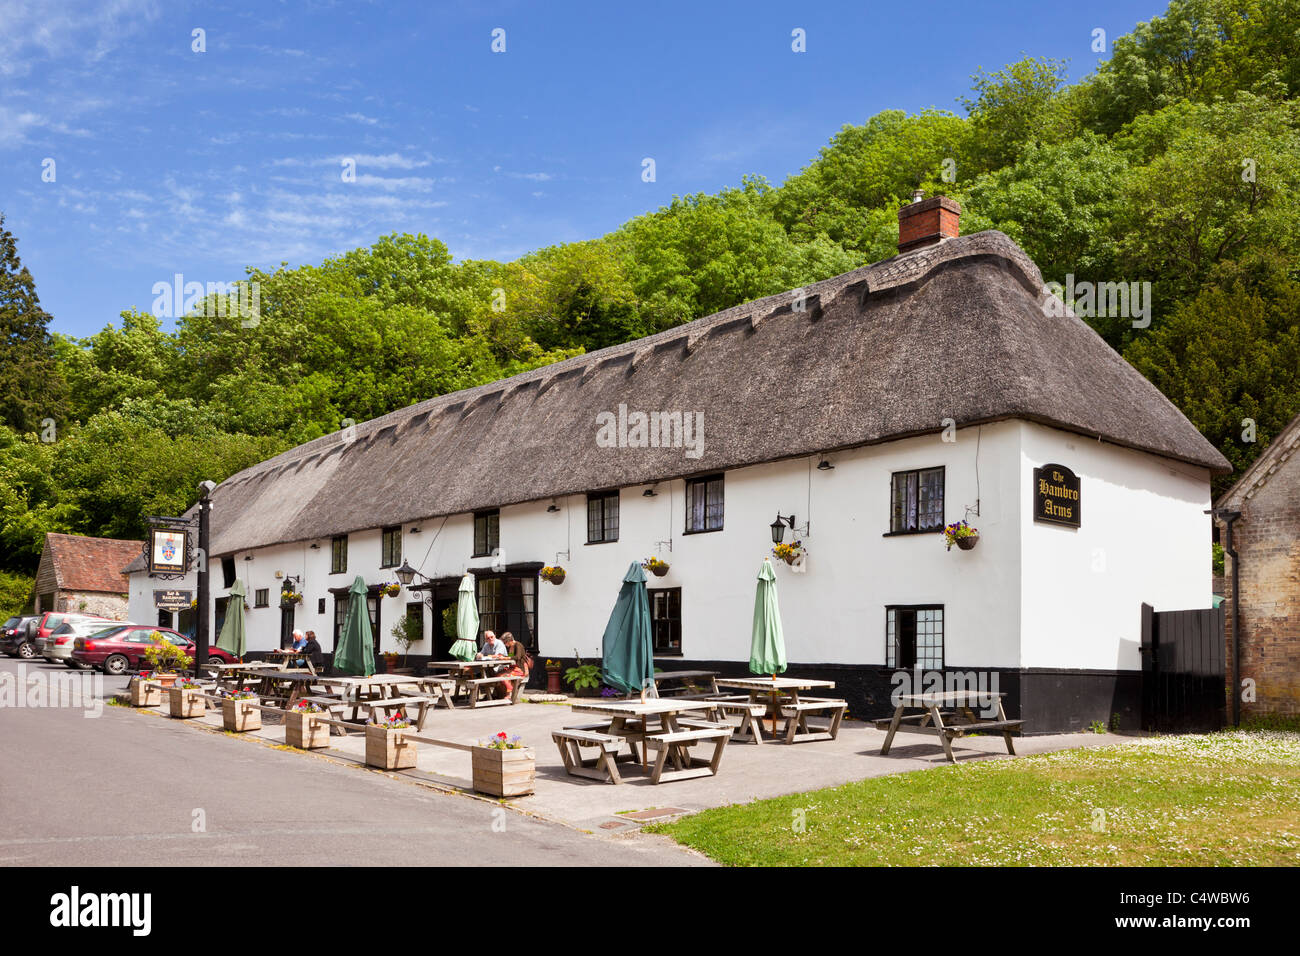 Le pub du village Hambro Arms avec toit de chaume dans le joli village anglais de Milton Abbas, Dorset, England, UK Banque D'Images